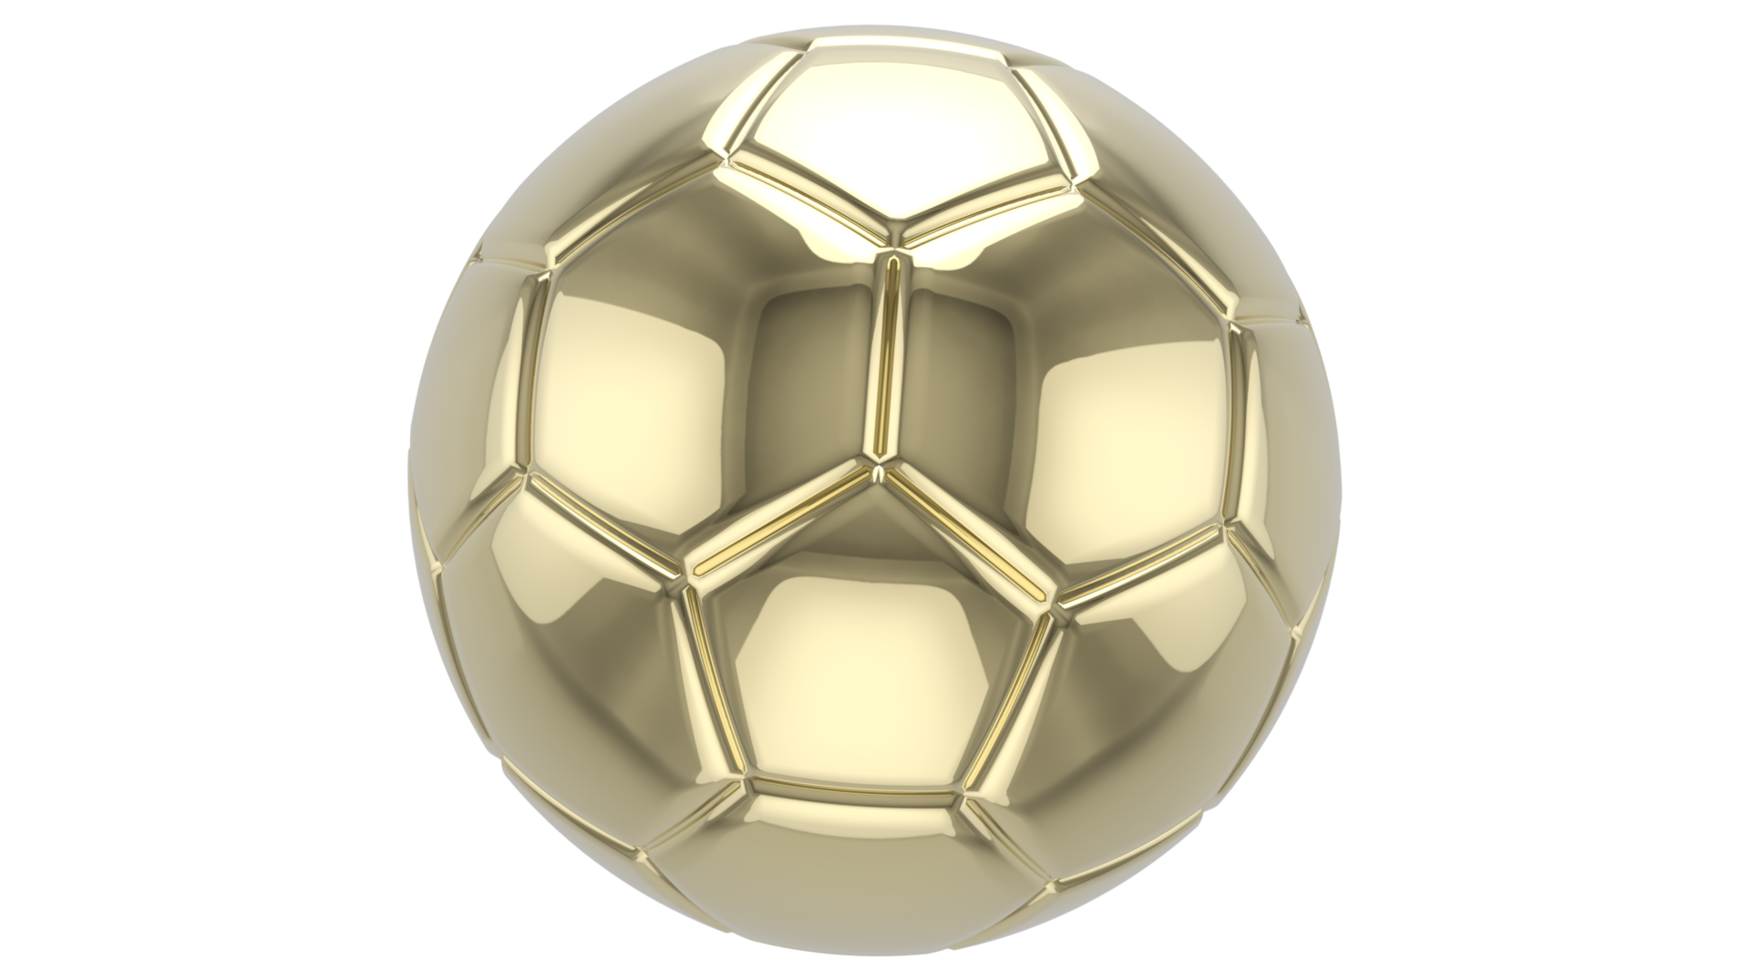 Balón de fútbol dorado realista 3d aislado en png transparente